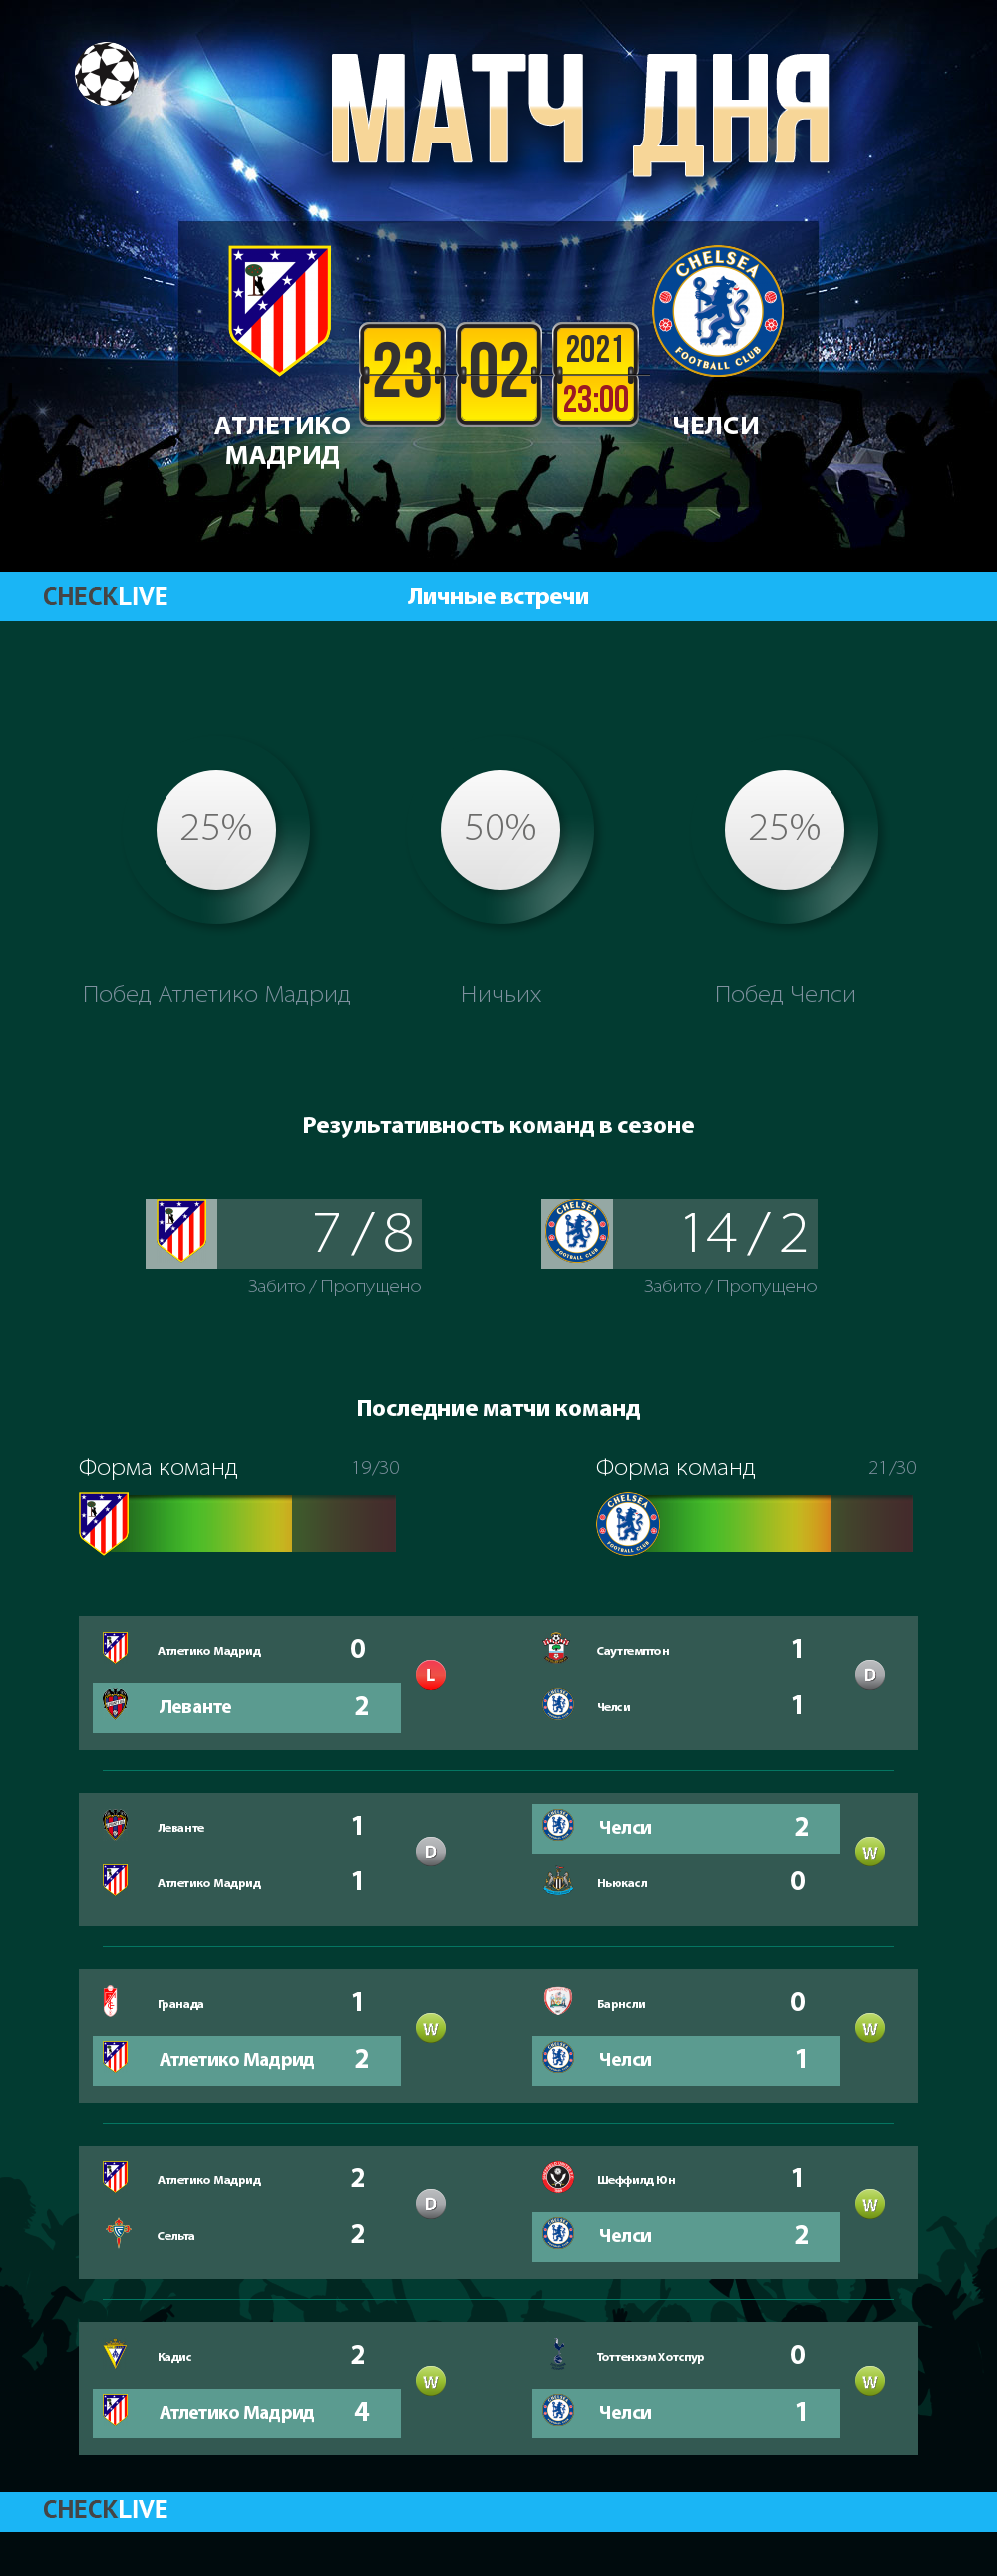 Инфографика Атлетико Мадрид и Челси матч дня 23.02.2021